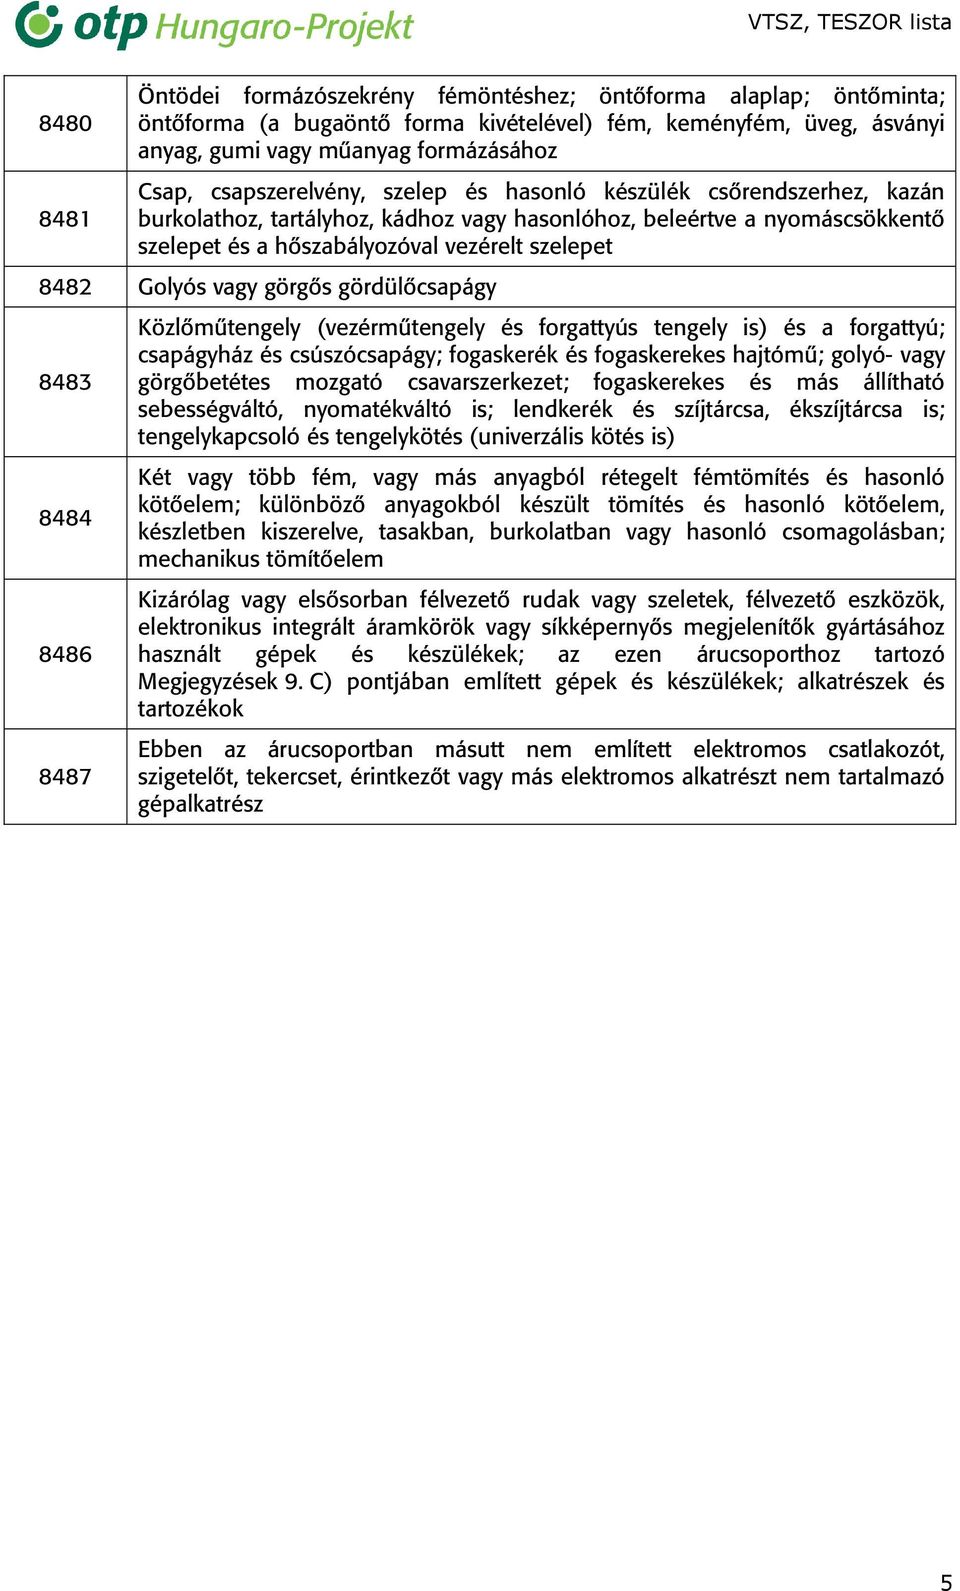 VTSZ mellékleti lista - PDF Ingyenes letöltés